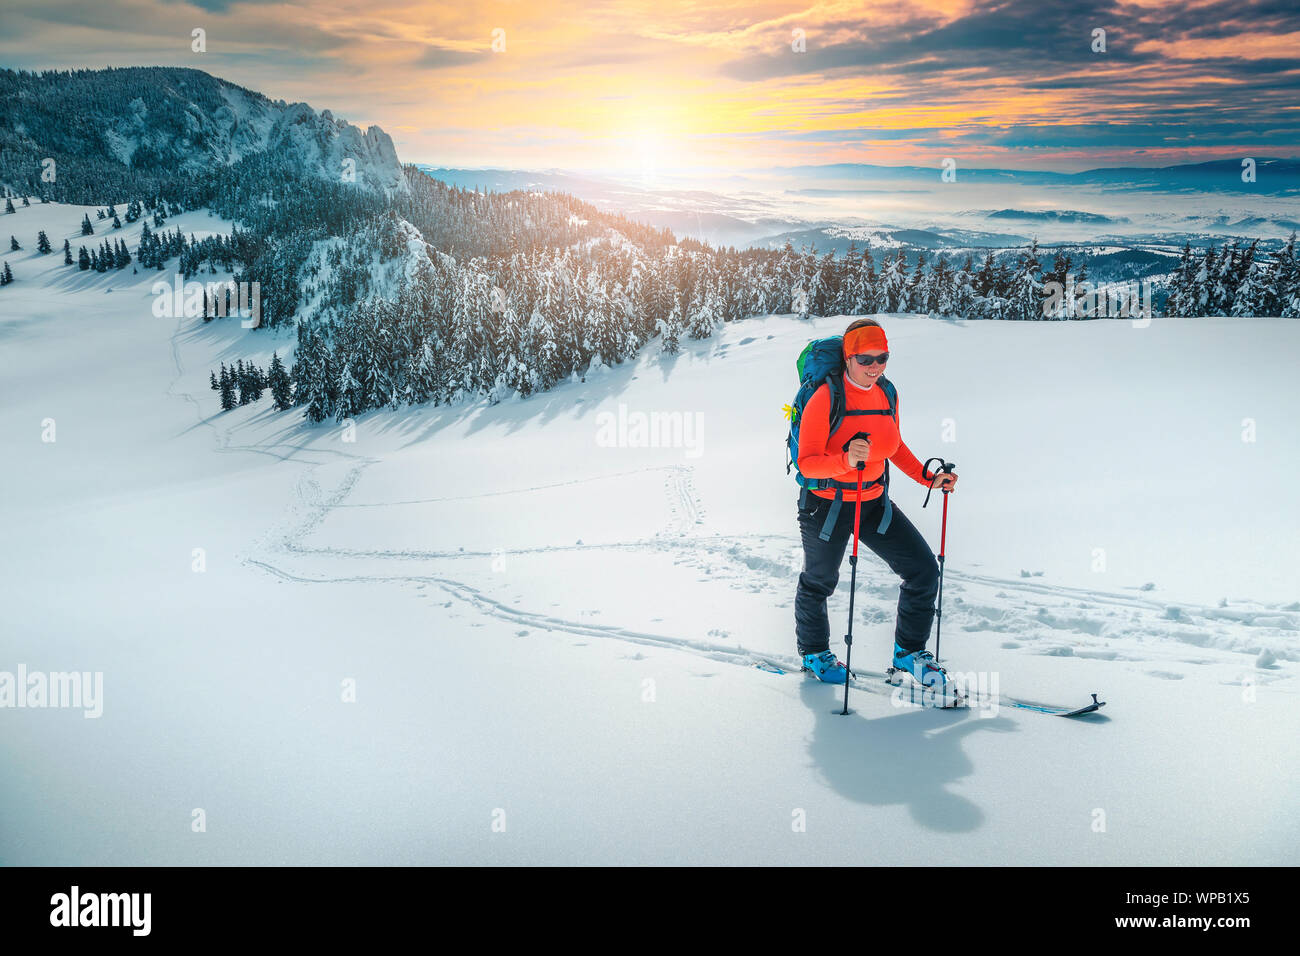 Freundliche backpacker Frau auf frischen Pulverschnee, Skitouren auf den verschneiten Pisten. Backcountry skier Frau mit bunten Rucksack und Mountain Equipment Stockfoto